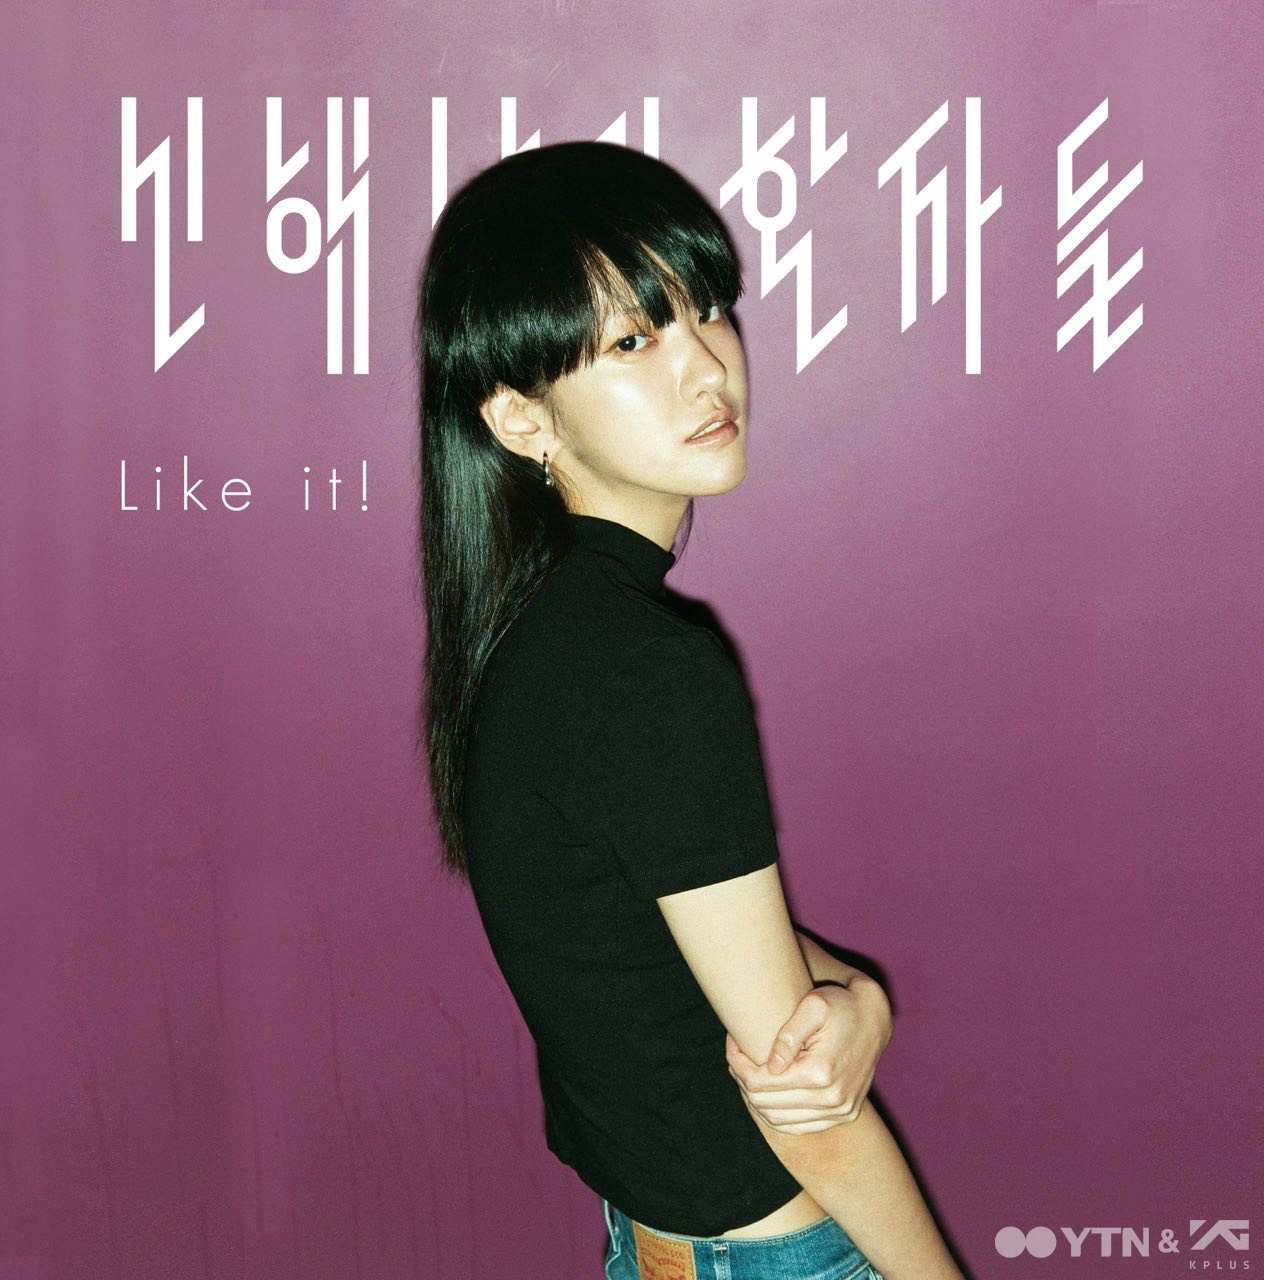 신해남과 환자들 두 번째 싱글 ‘Like it!’ 정식 발매!